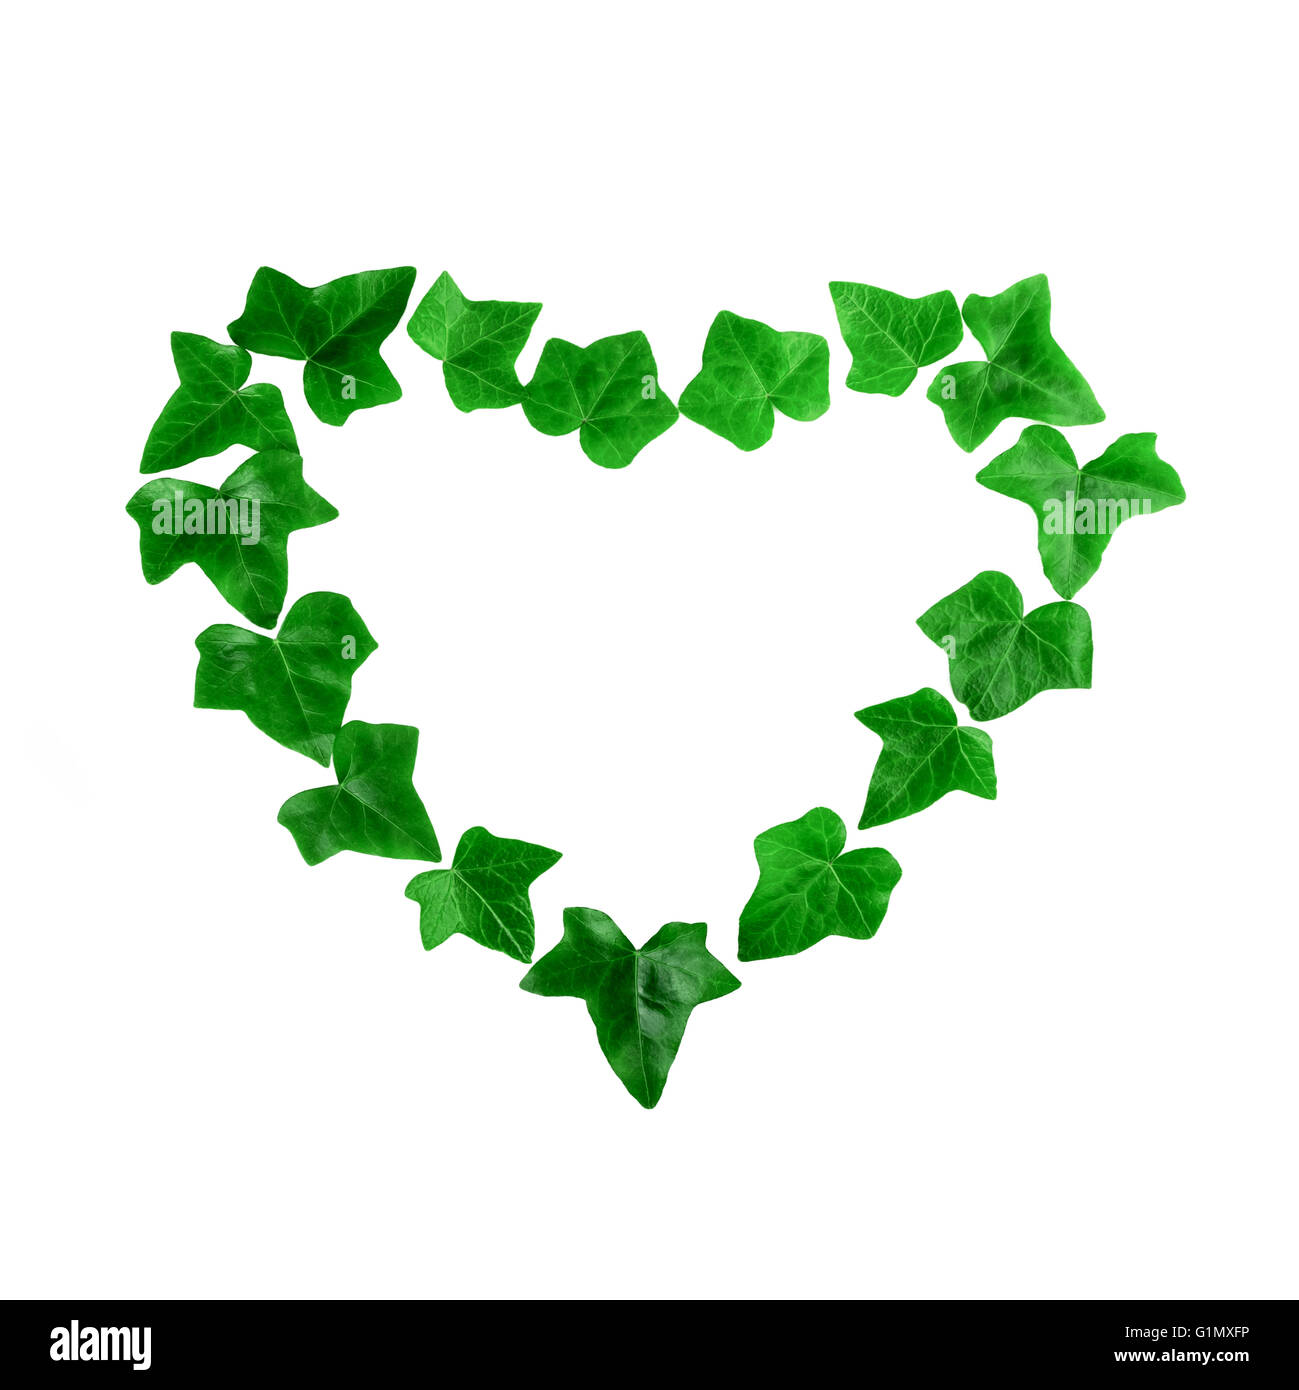 Coeur vert motif de feuilles de lierre sur fond blanc. Mise à plat. Banque D'Images